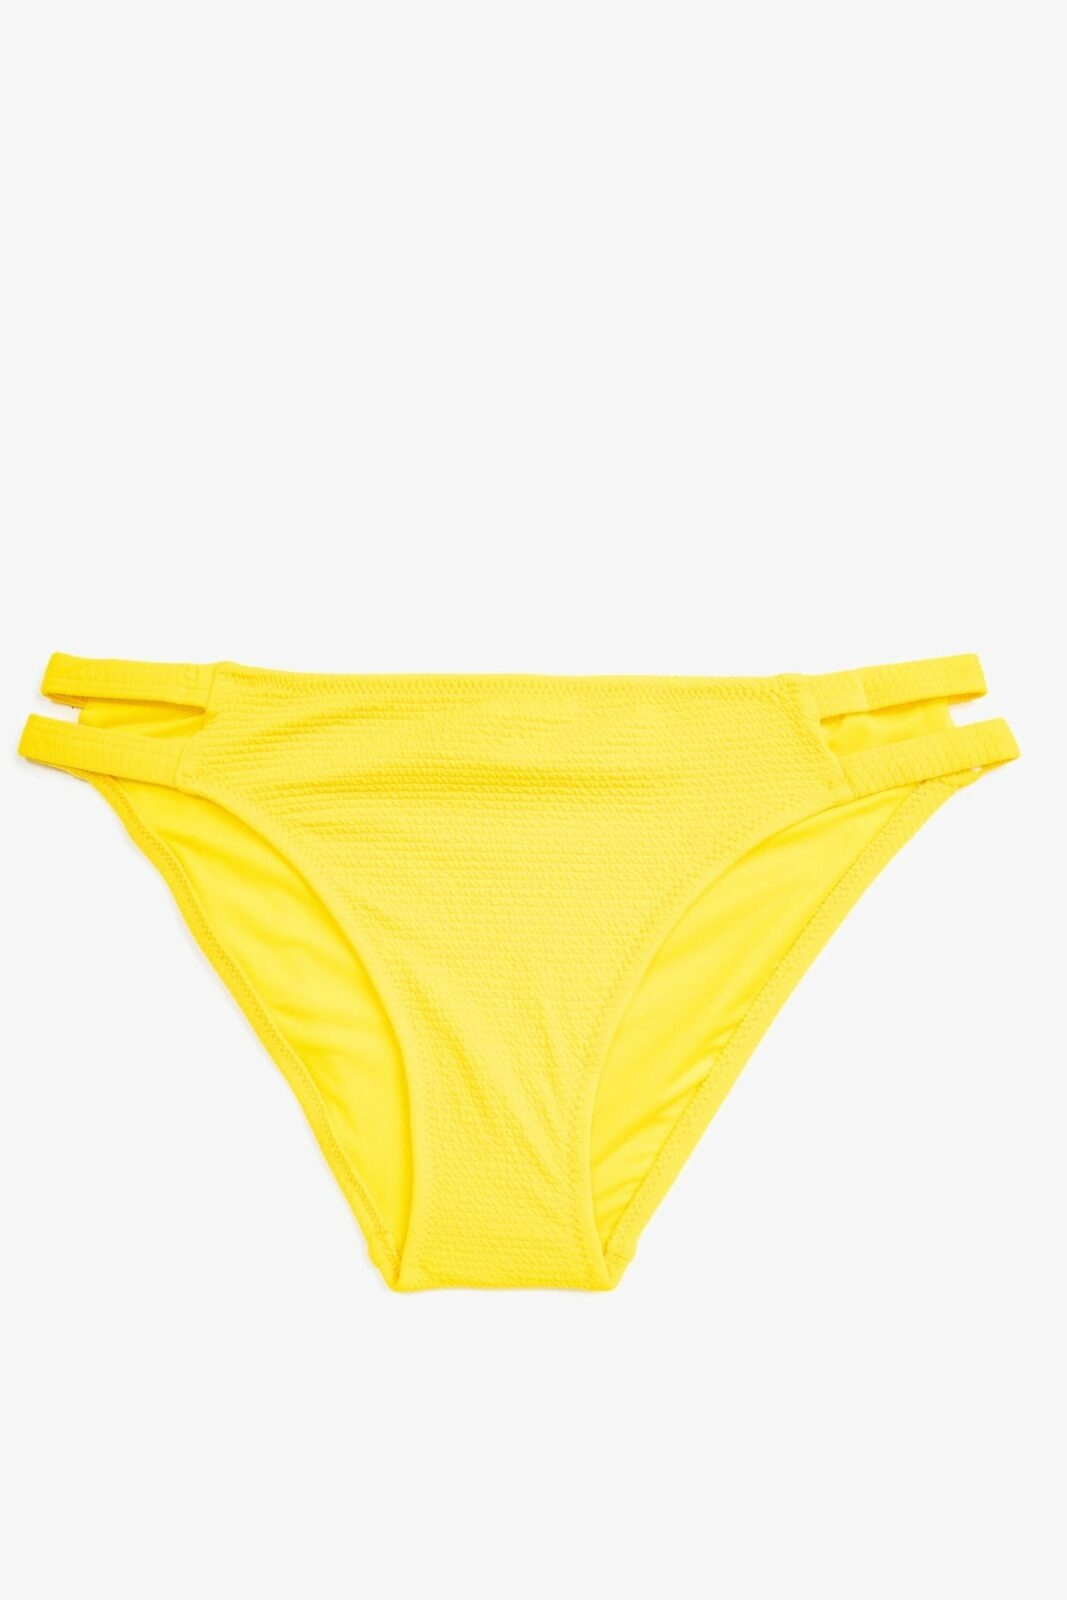 Koton Bikini Bottom - Yellow